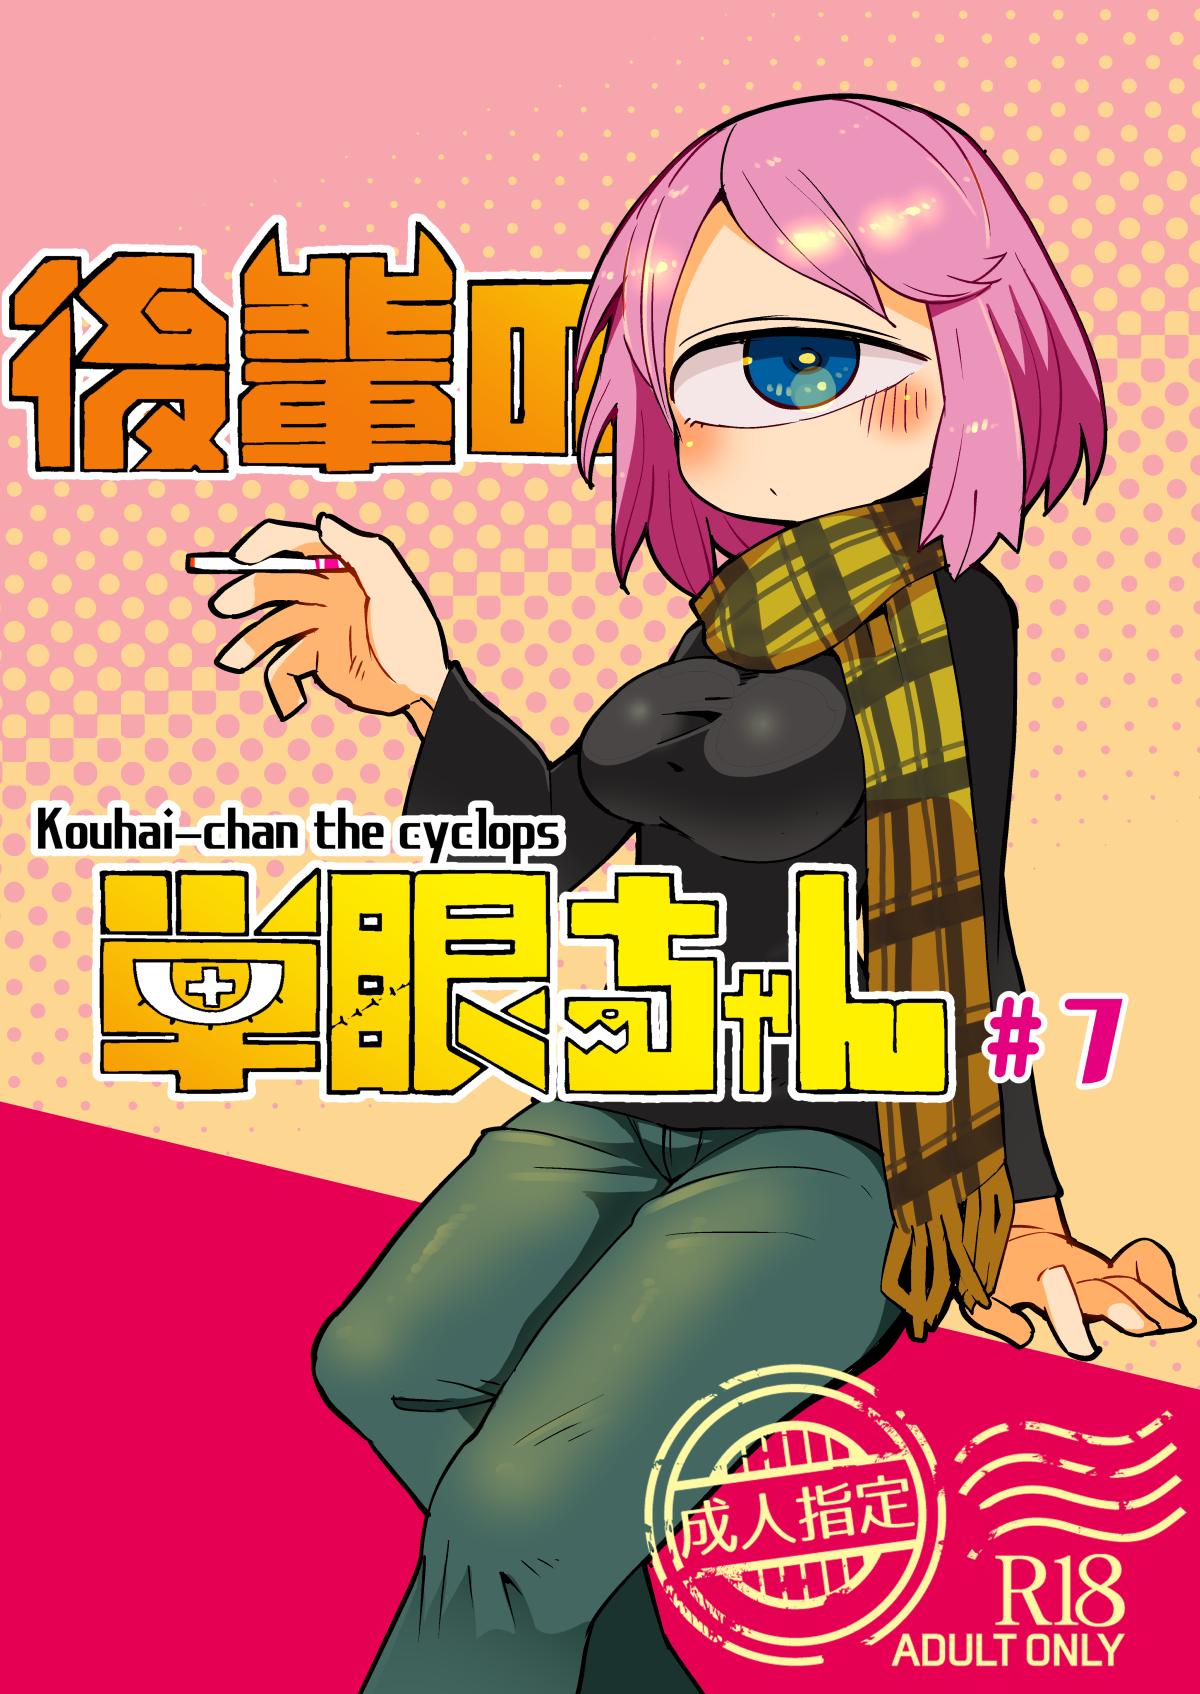 Kouhai no Tanganchan the Cyclops #7 1